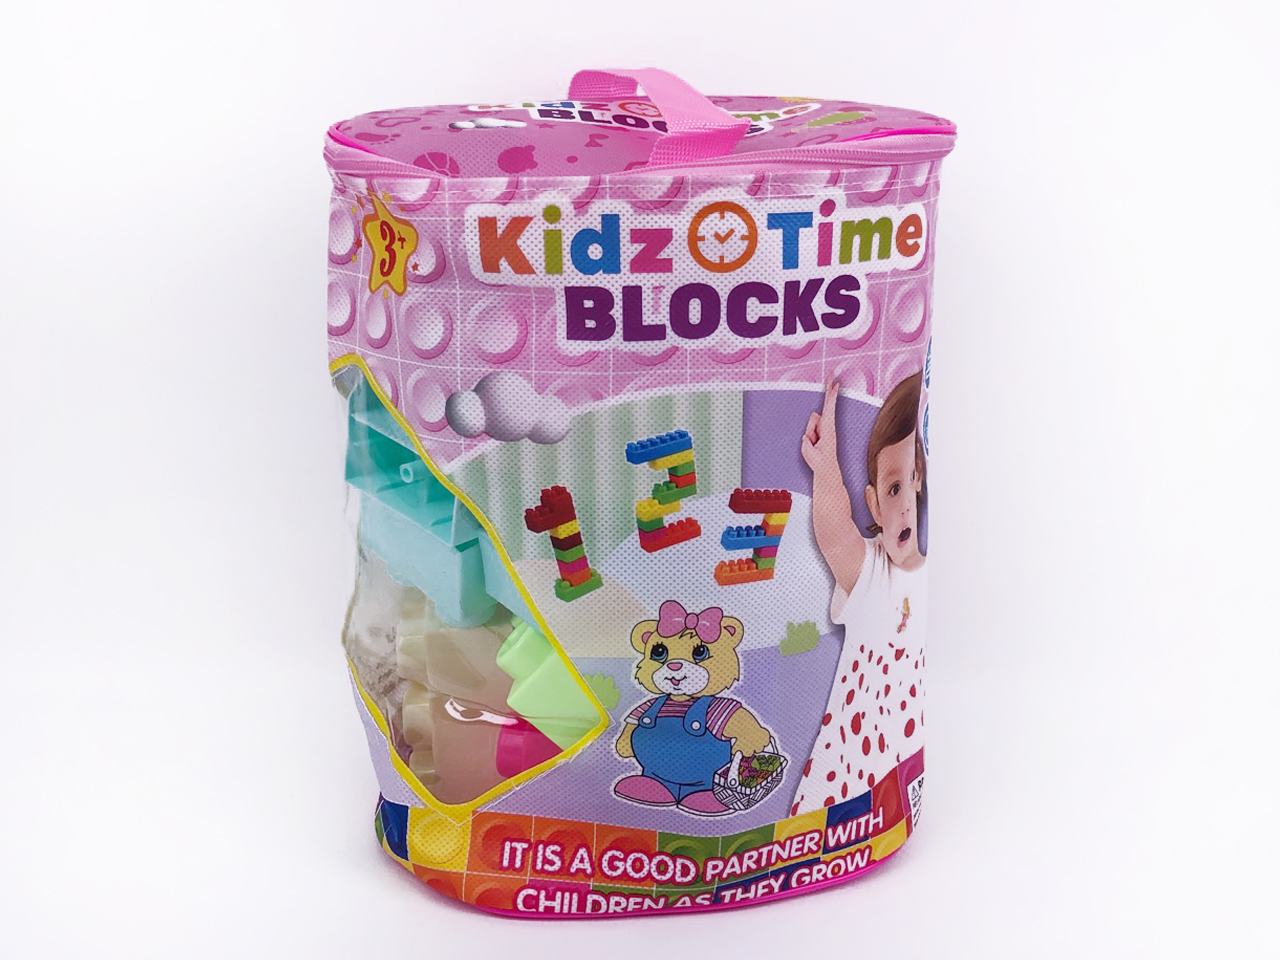 Blocks(23PCS) toys